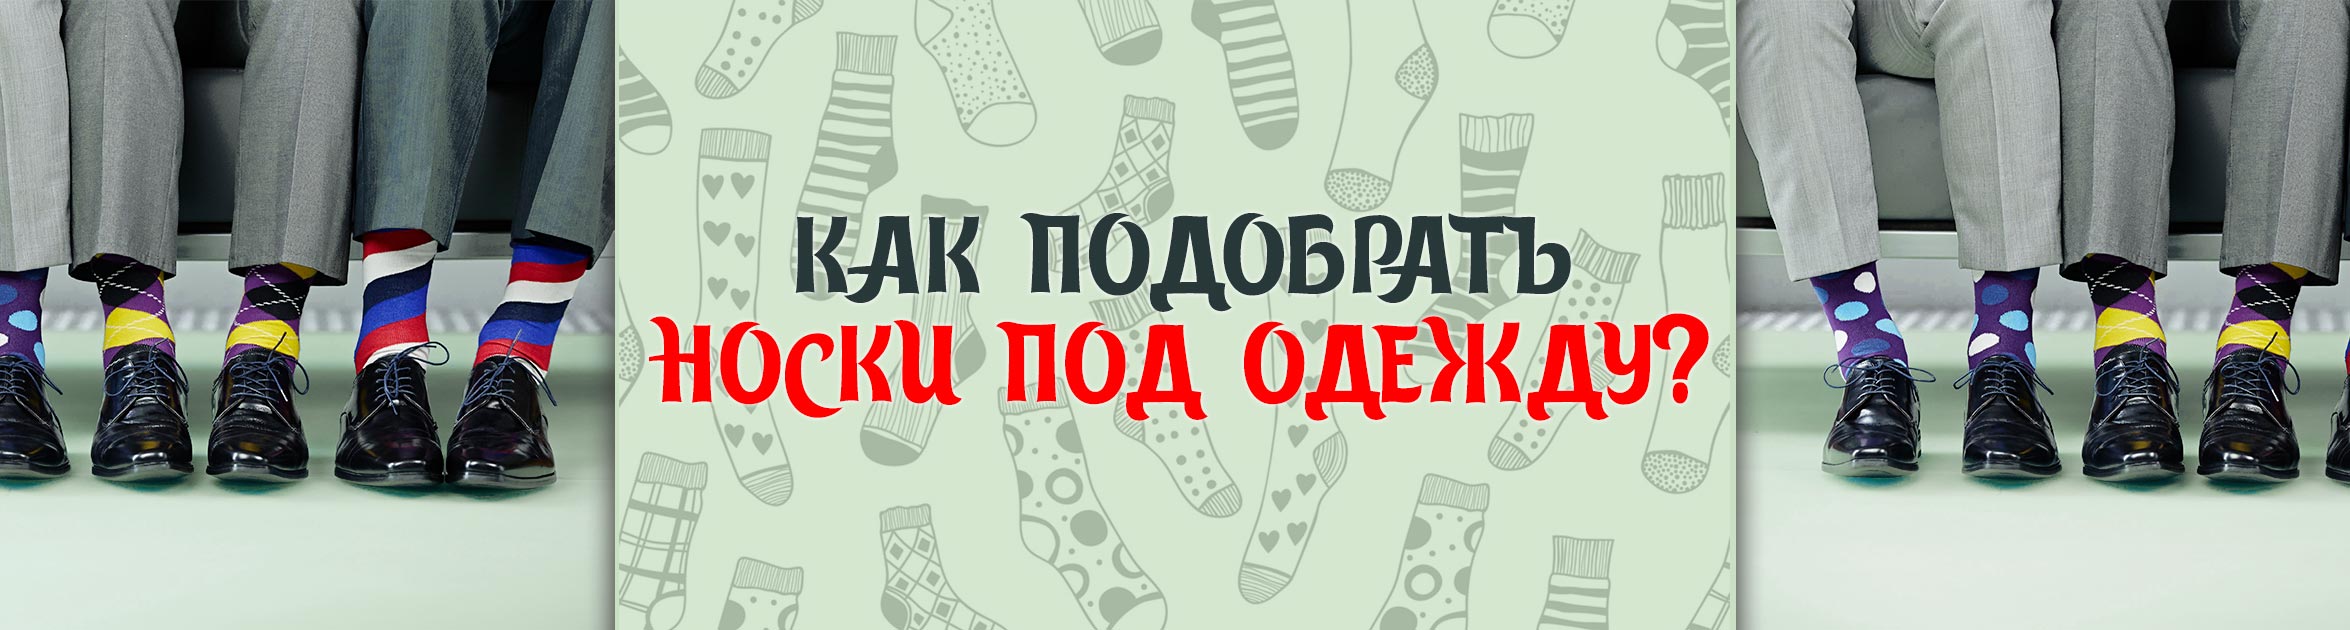 Как подобрать носки под одежду? Советы от интернет-магазина ИвНоски